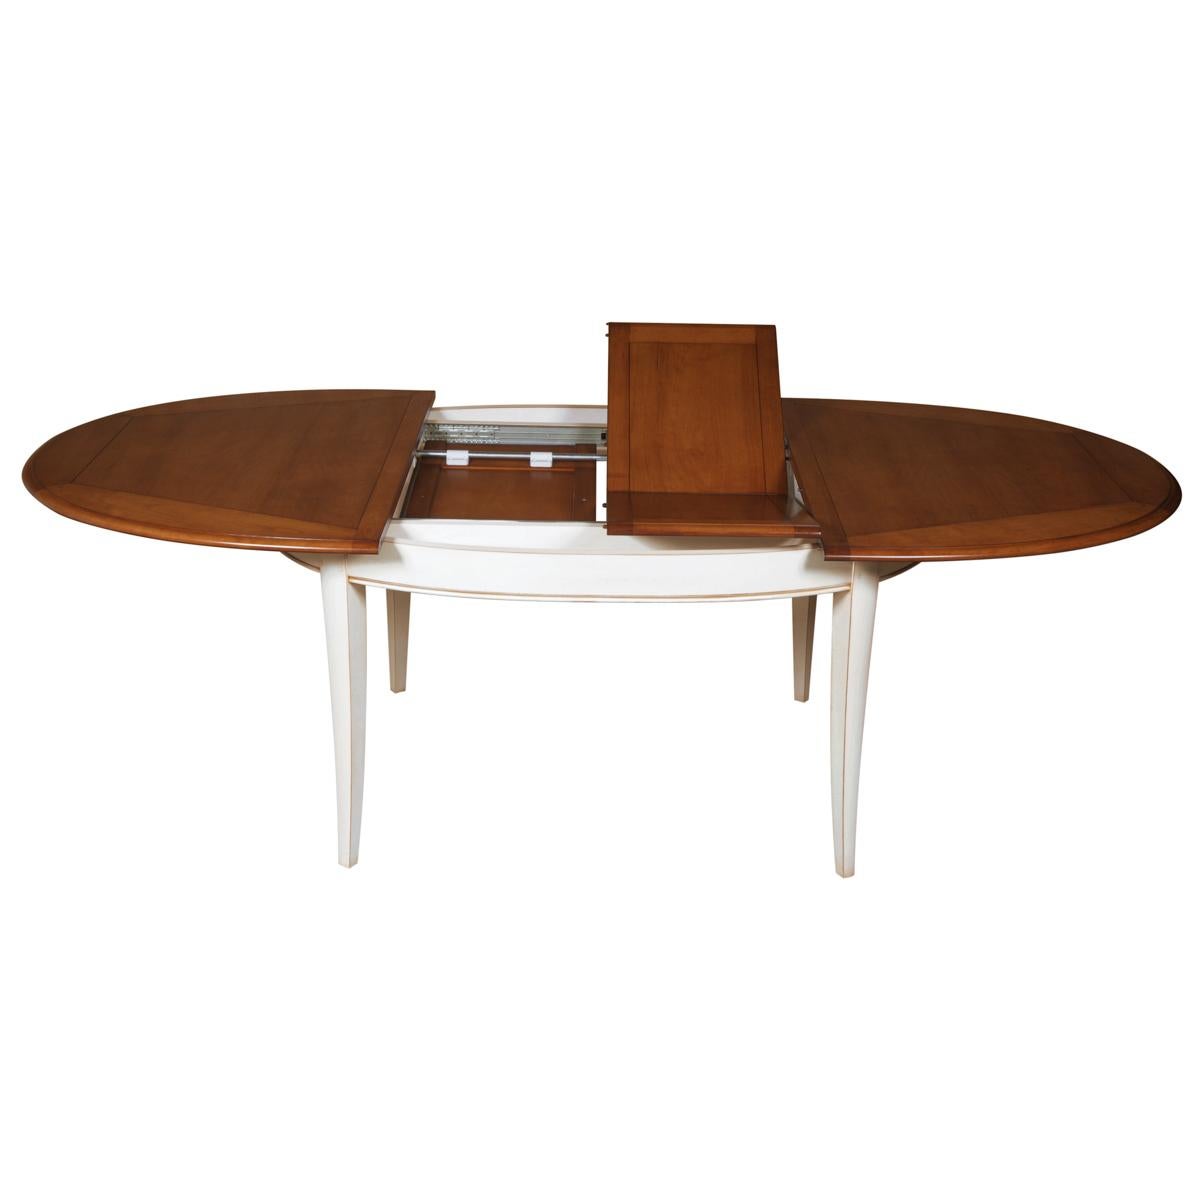 Campagne Table ovale extensible de style provincial français avec une finition crème claire en vente